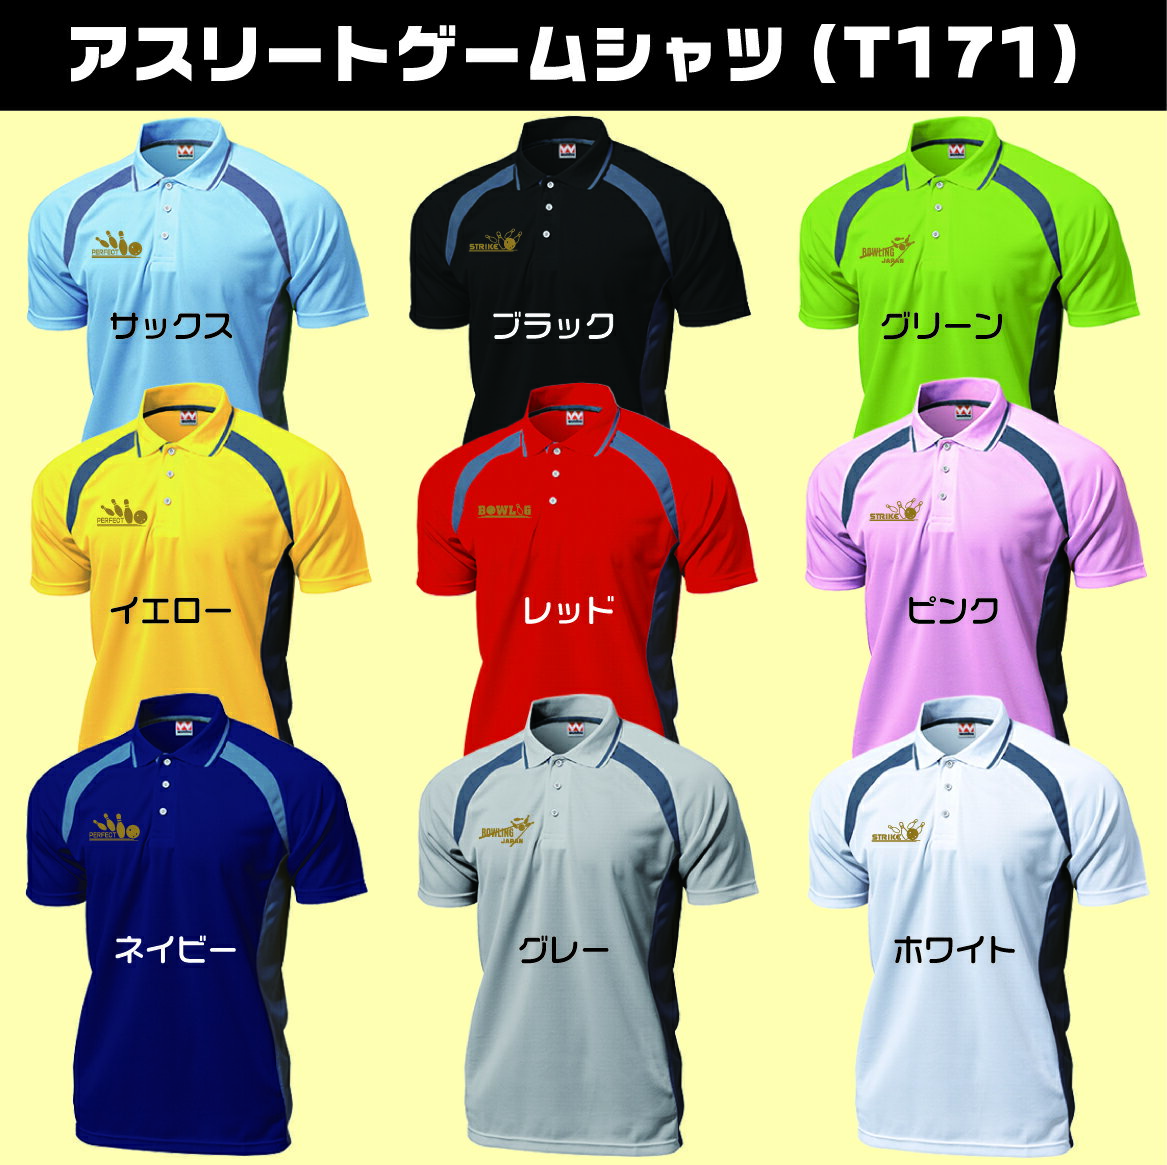 アスリートゲームシャツT-171(名入れ1行無料)、ボウリングワンポイン...